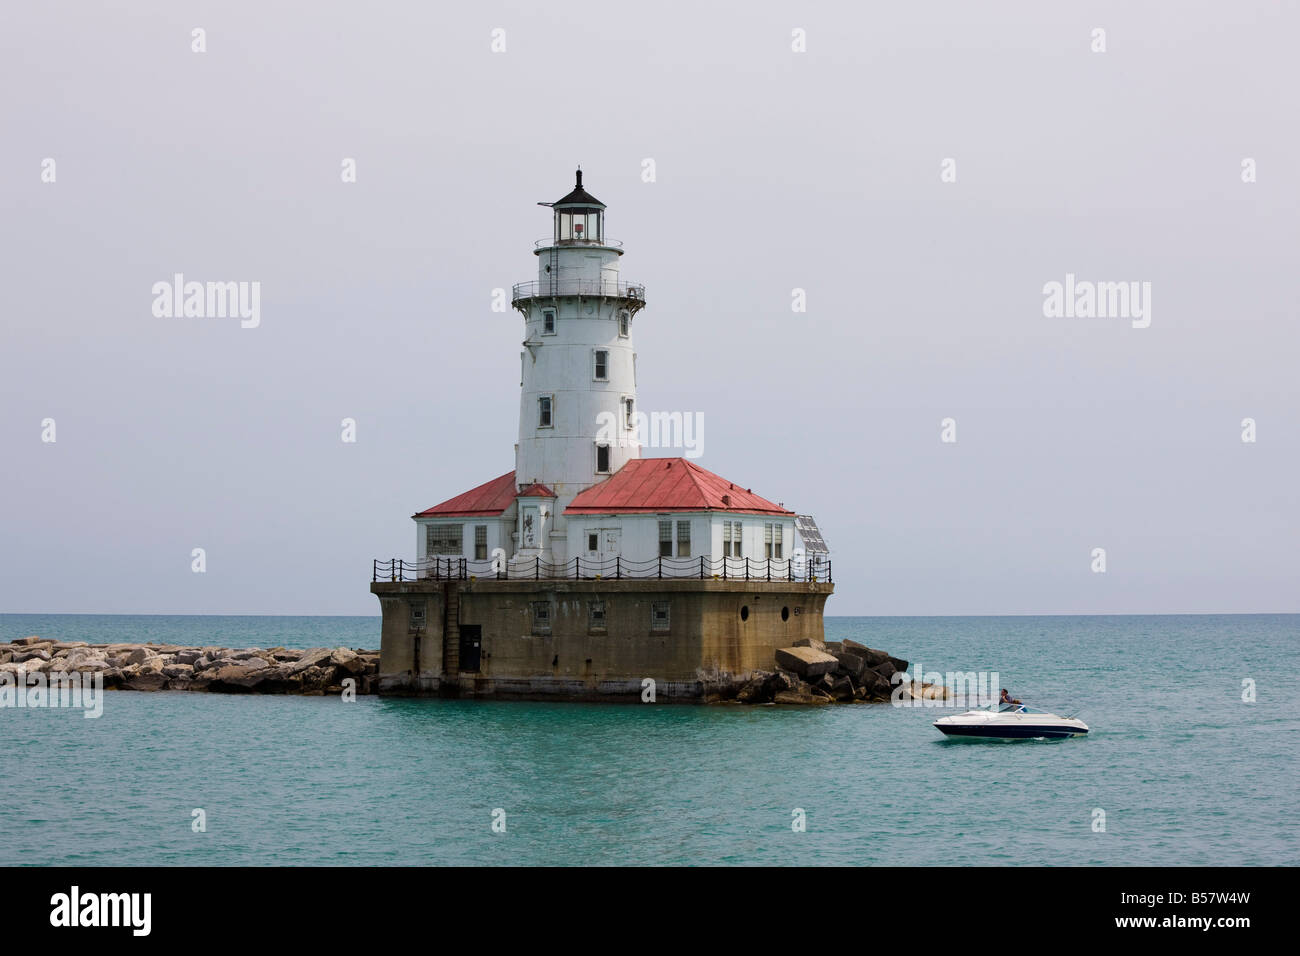 Hafen von Chicago Leuchtturm, Lake Michigan und Chicago, Illinois, Vereinigte Staaten von Amerika, Nordamerika Stockfoto